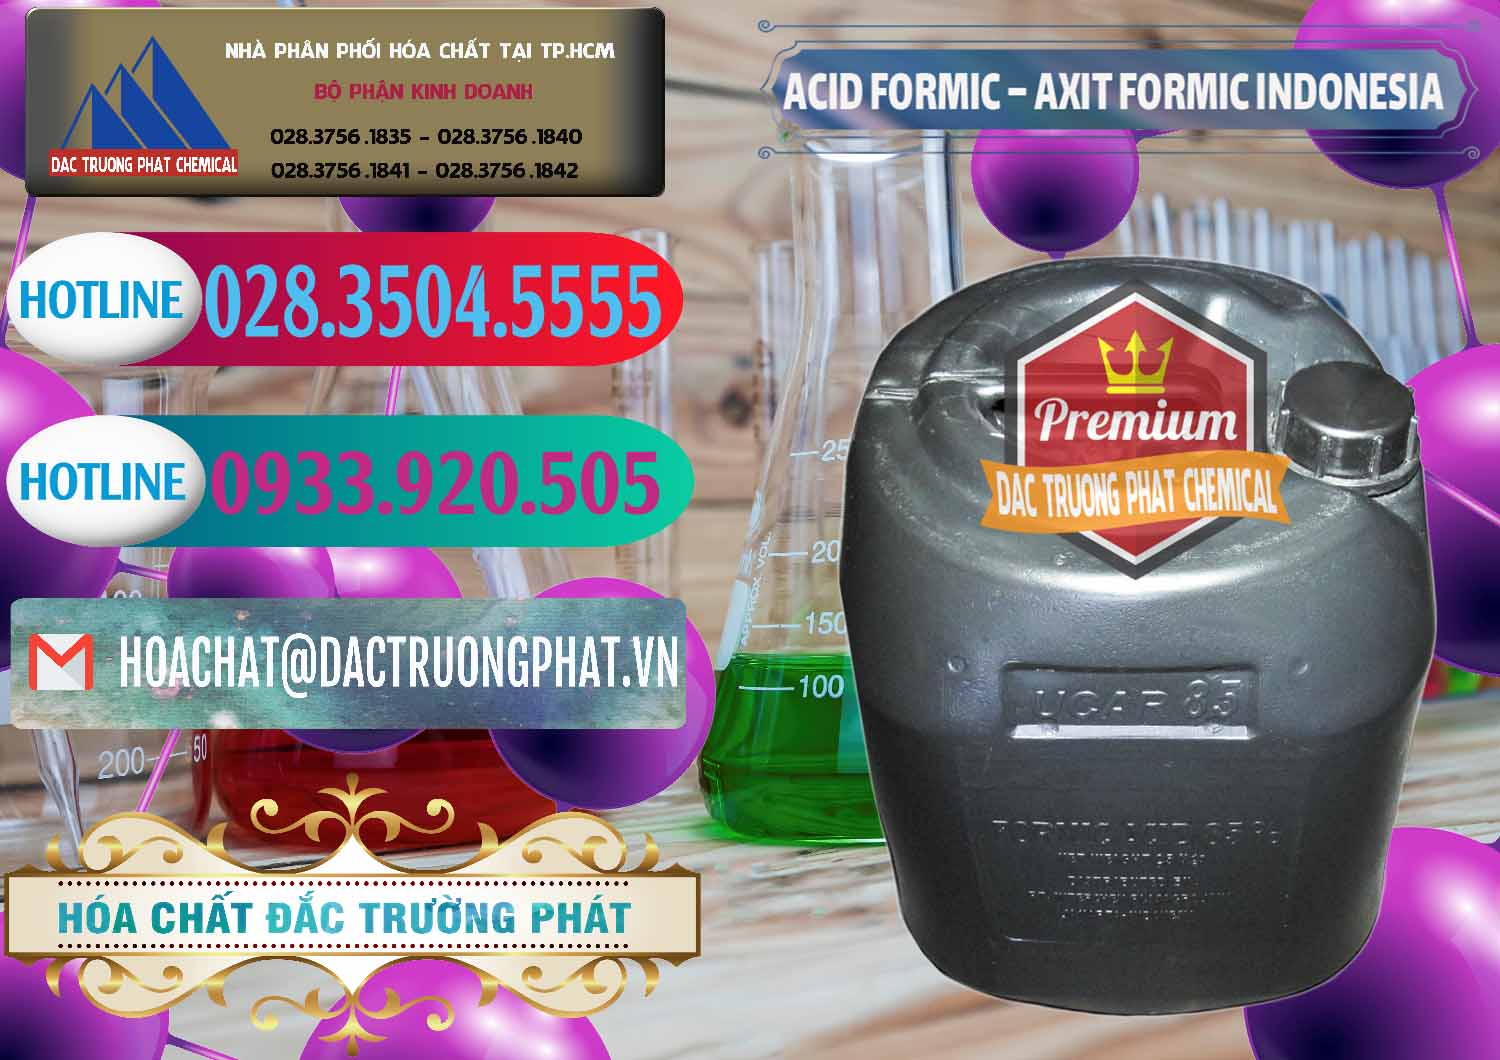 Phân phối - bán Acid Formic - Axit Formic Indonesia - 0026 - Đơn vị phân phối & bán hóa chất tại TP.HCM - truongphat.vn